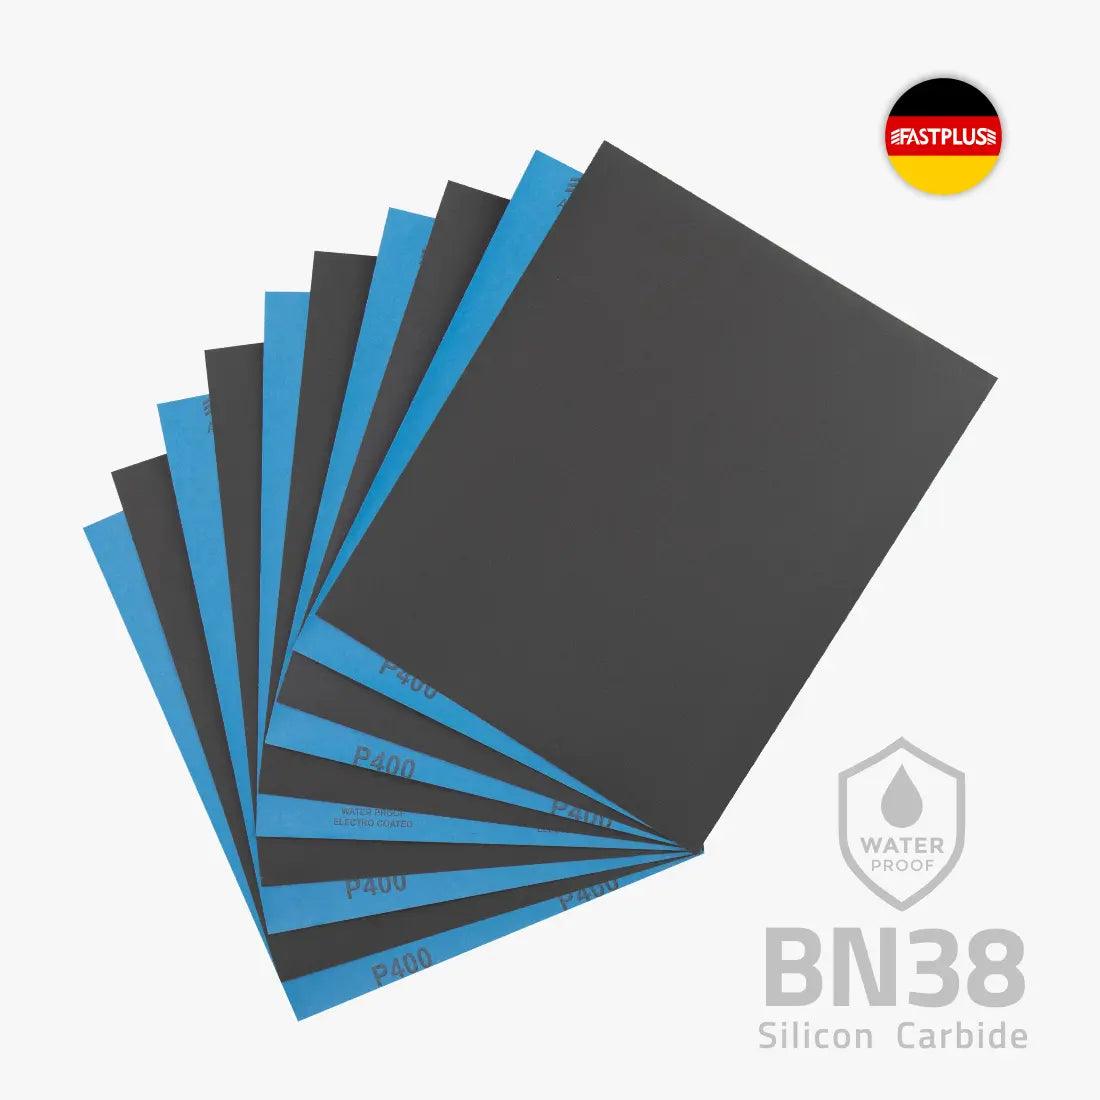 4CR 3500 Papier abrasif impermeable, feuilles 230x280mm Noir WOD